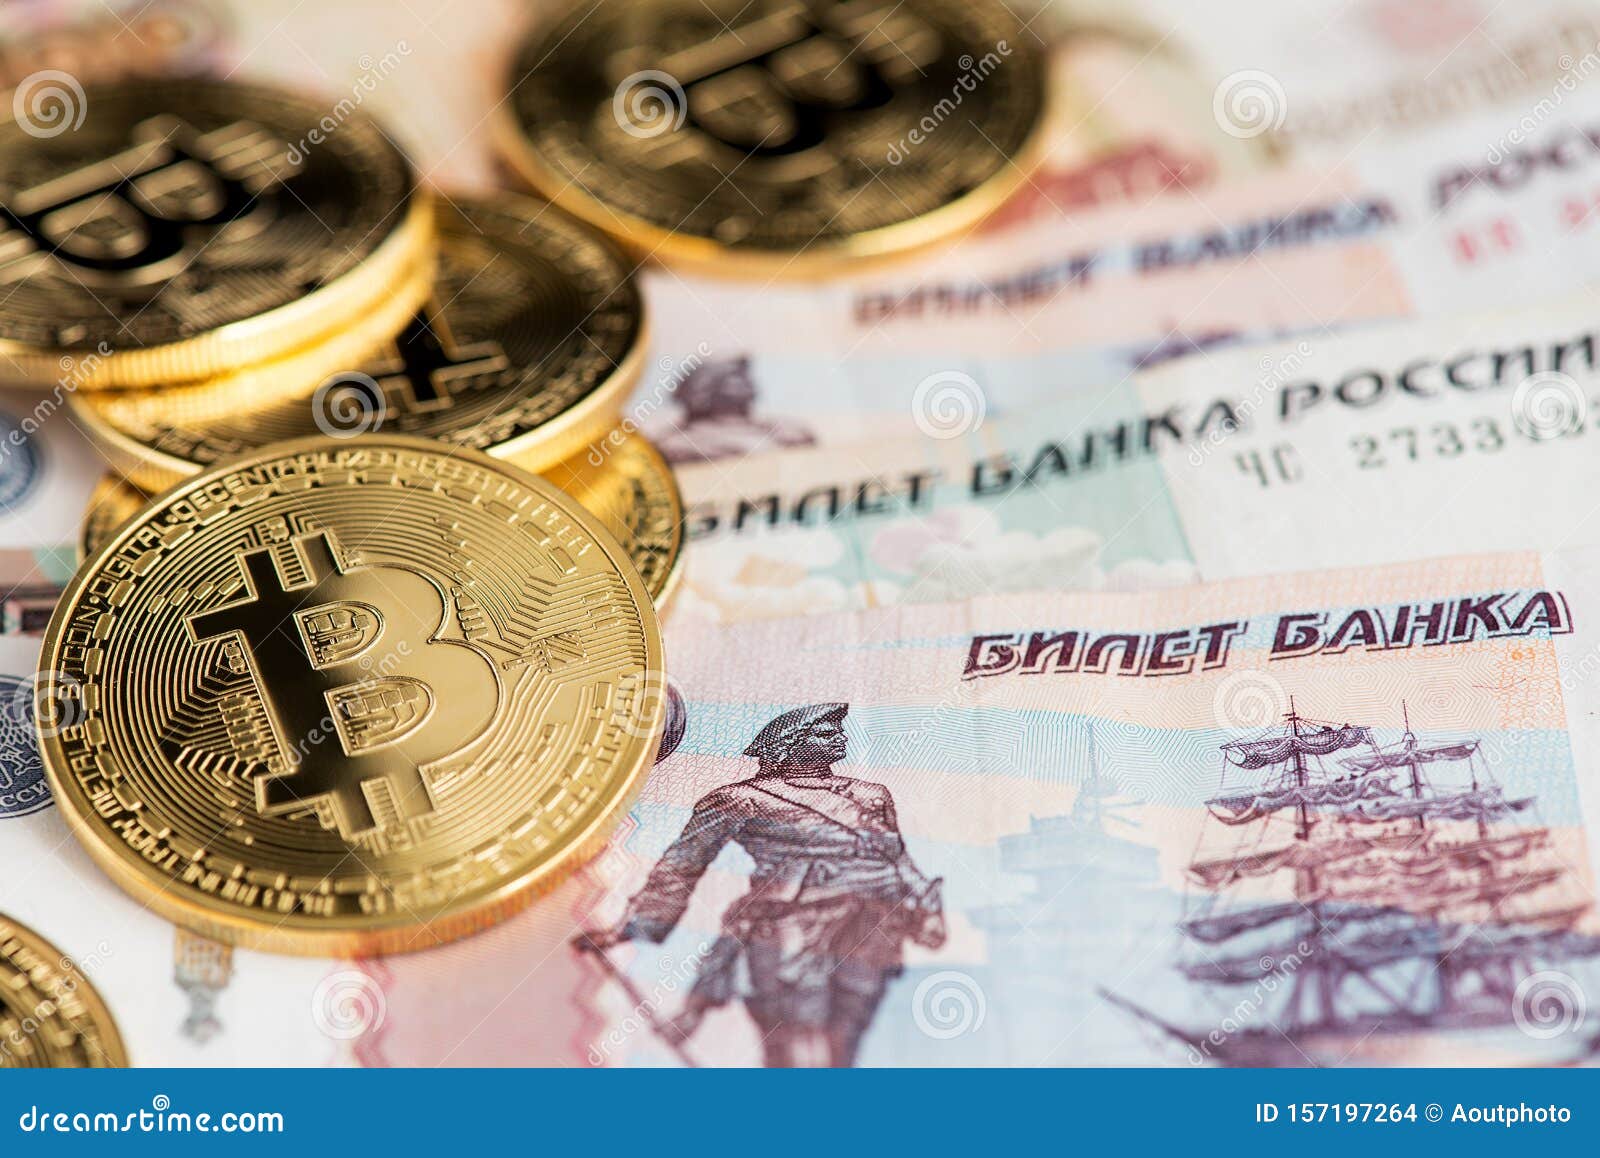 поменять биткоин на рубли в гидре